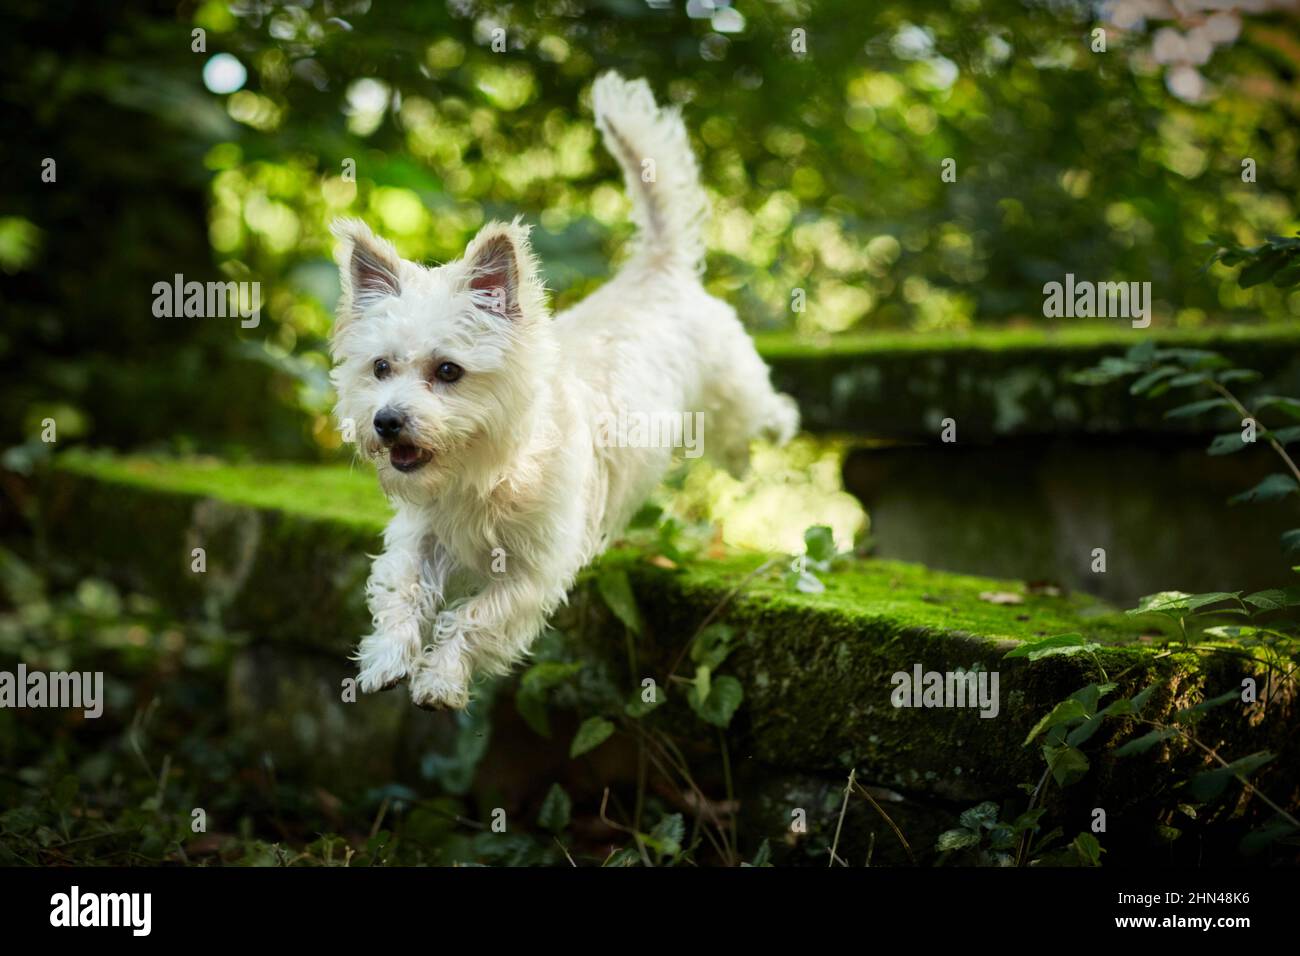 Cane di razza mista. Un cane adulto salta da un muro coperto di umore nella foresta. Grmany Foto Stock